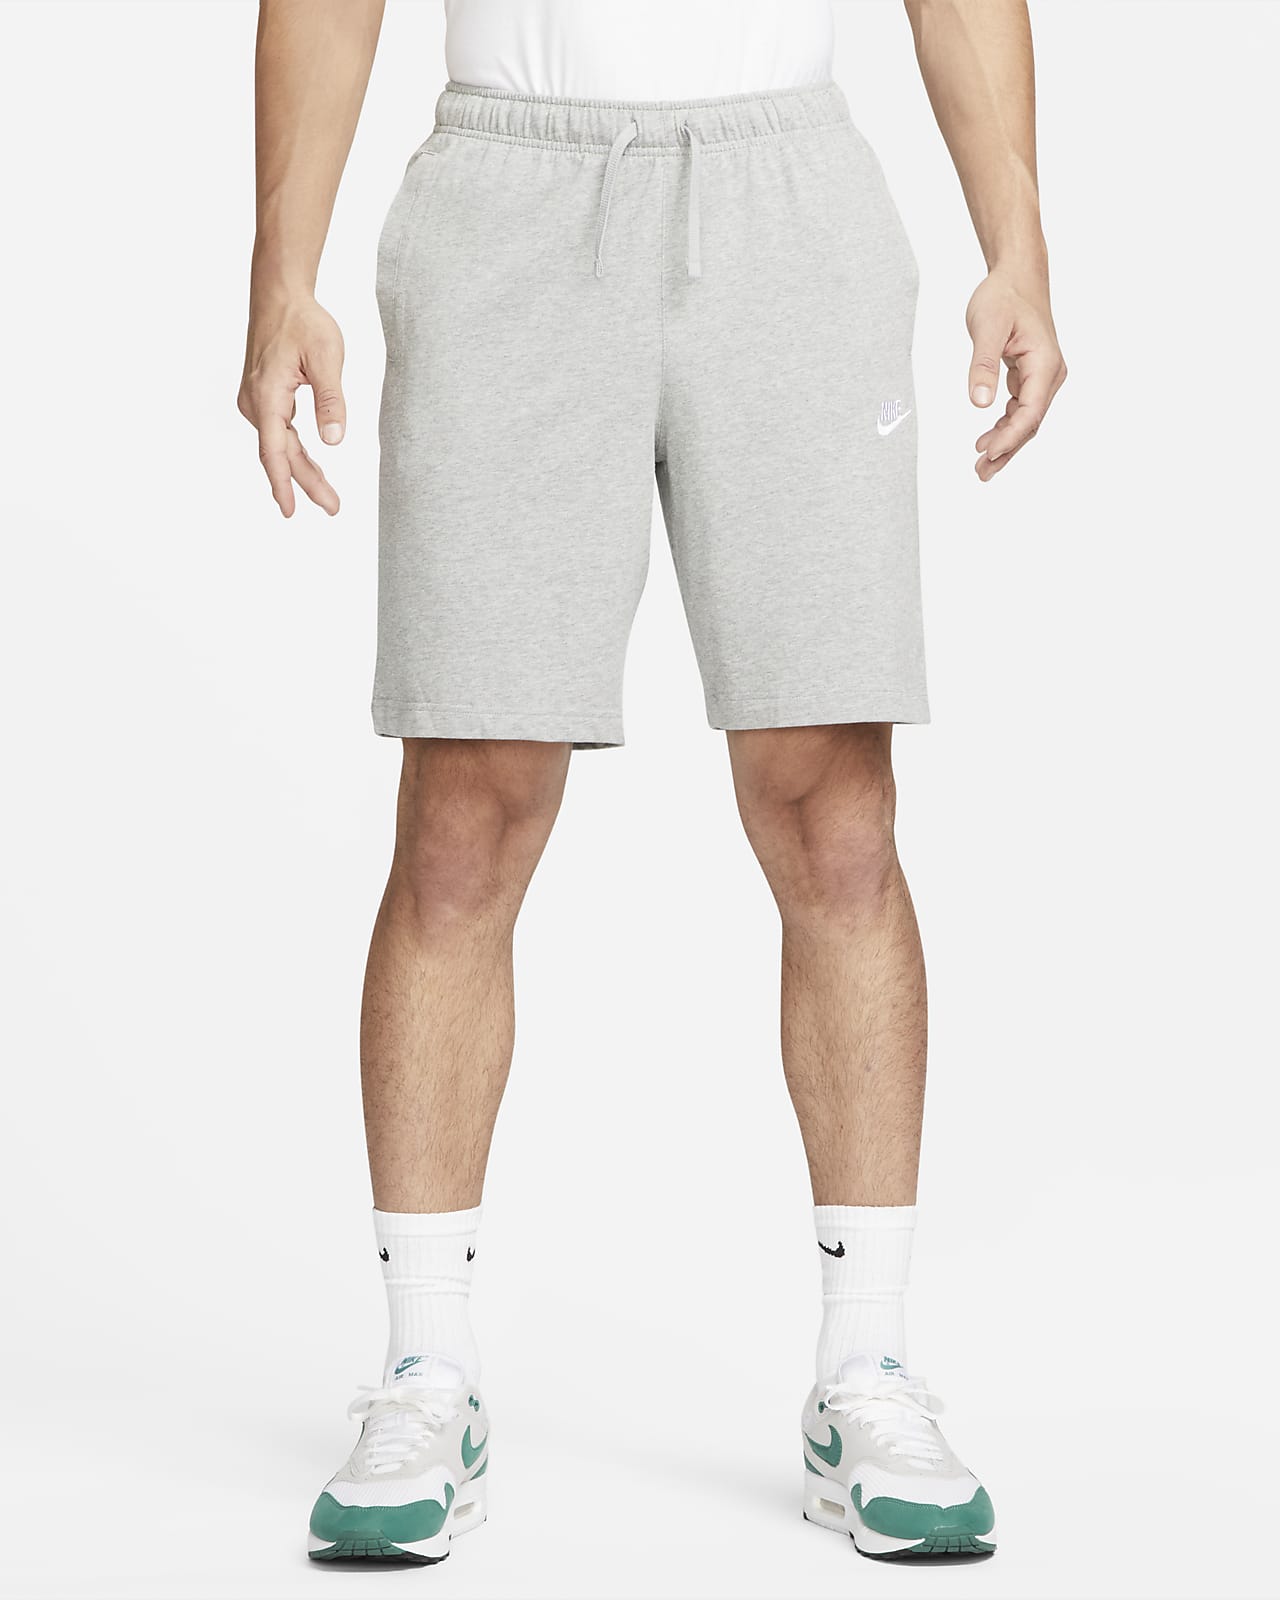 Calções Nike Sportswear Club para homem